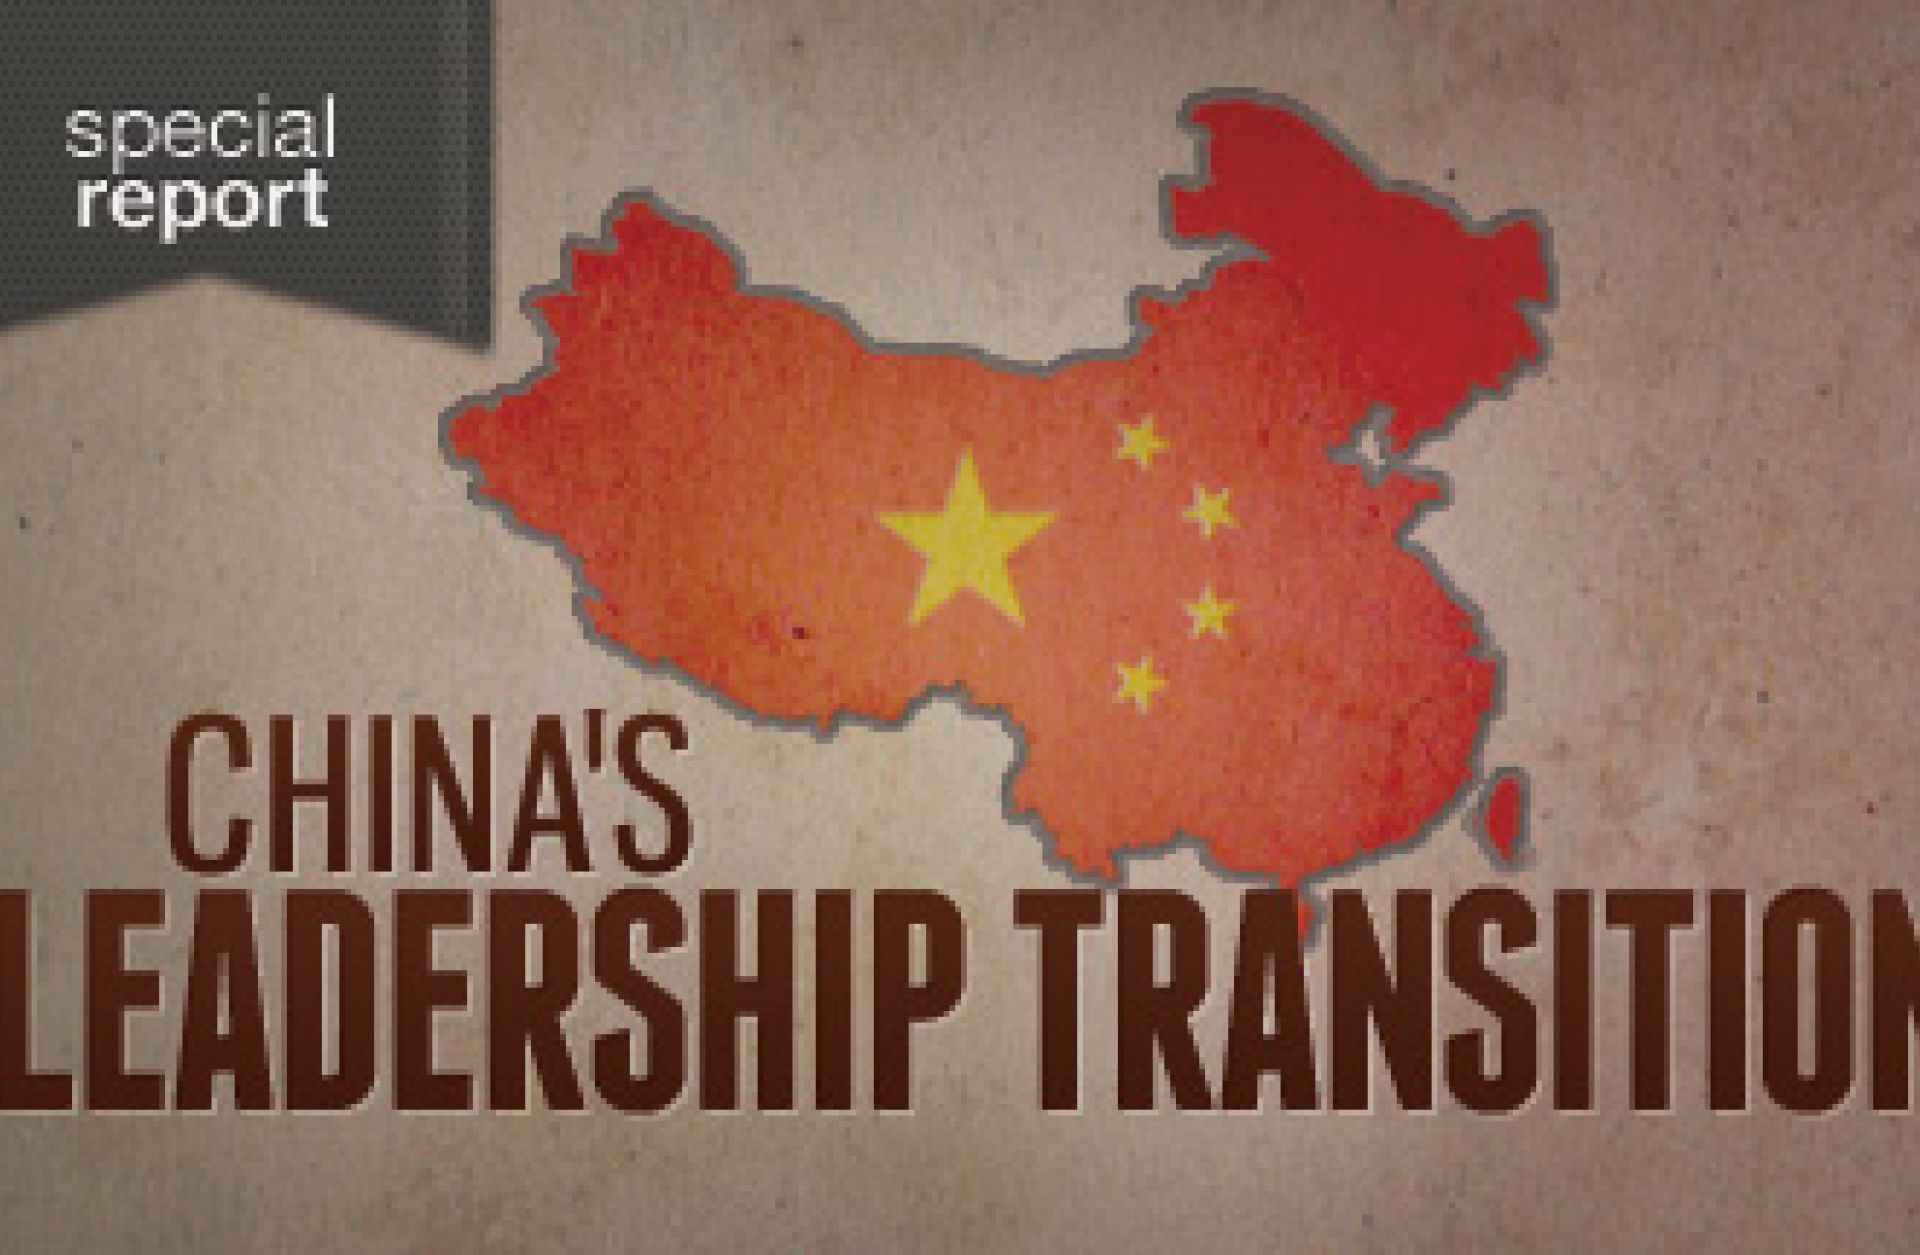 China's Leadership Transition